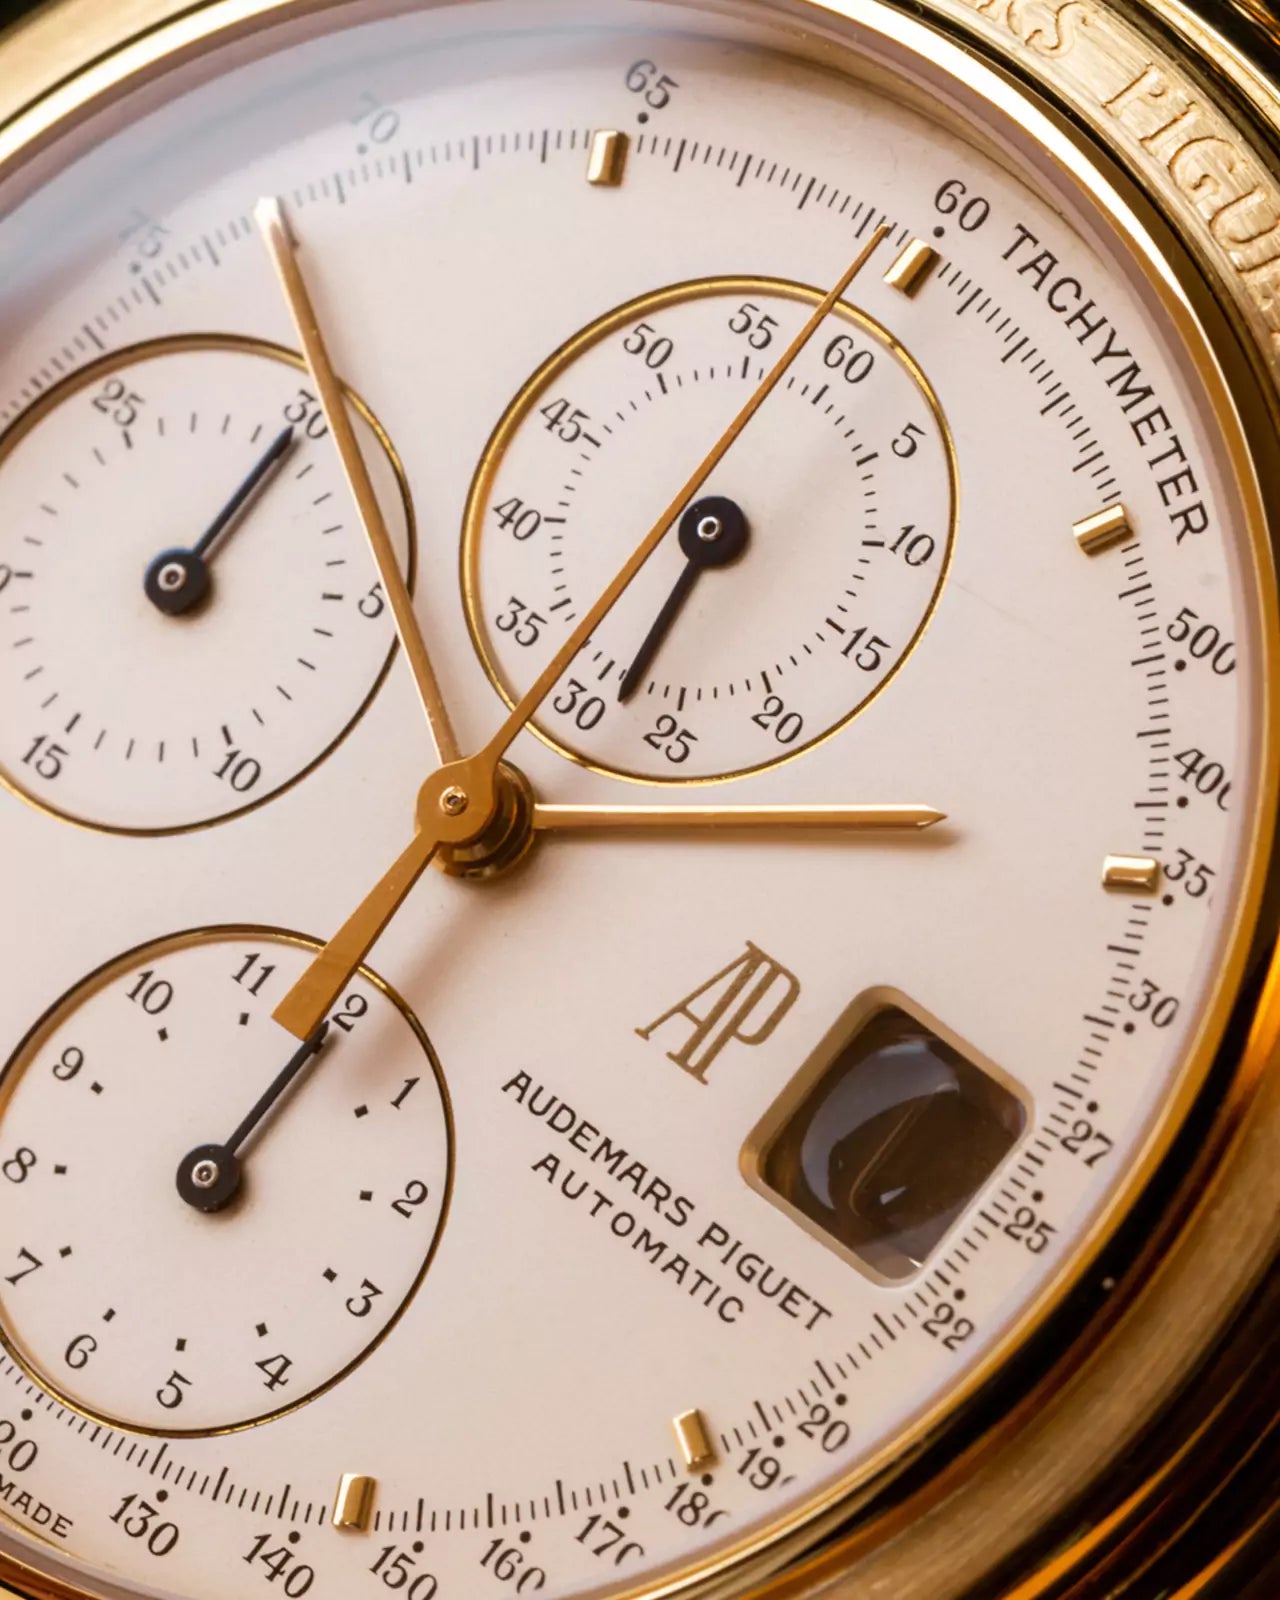 25645.0.760 Chronograph Audemars Piguet Watch